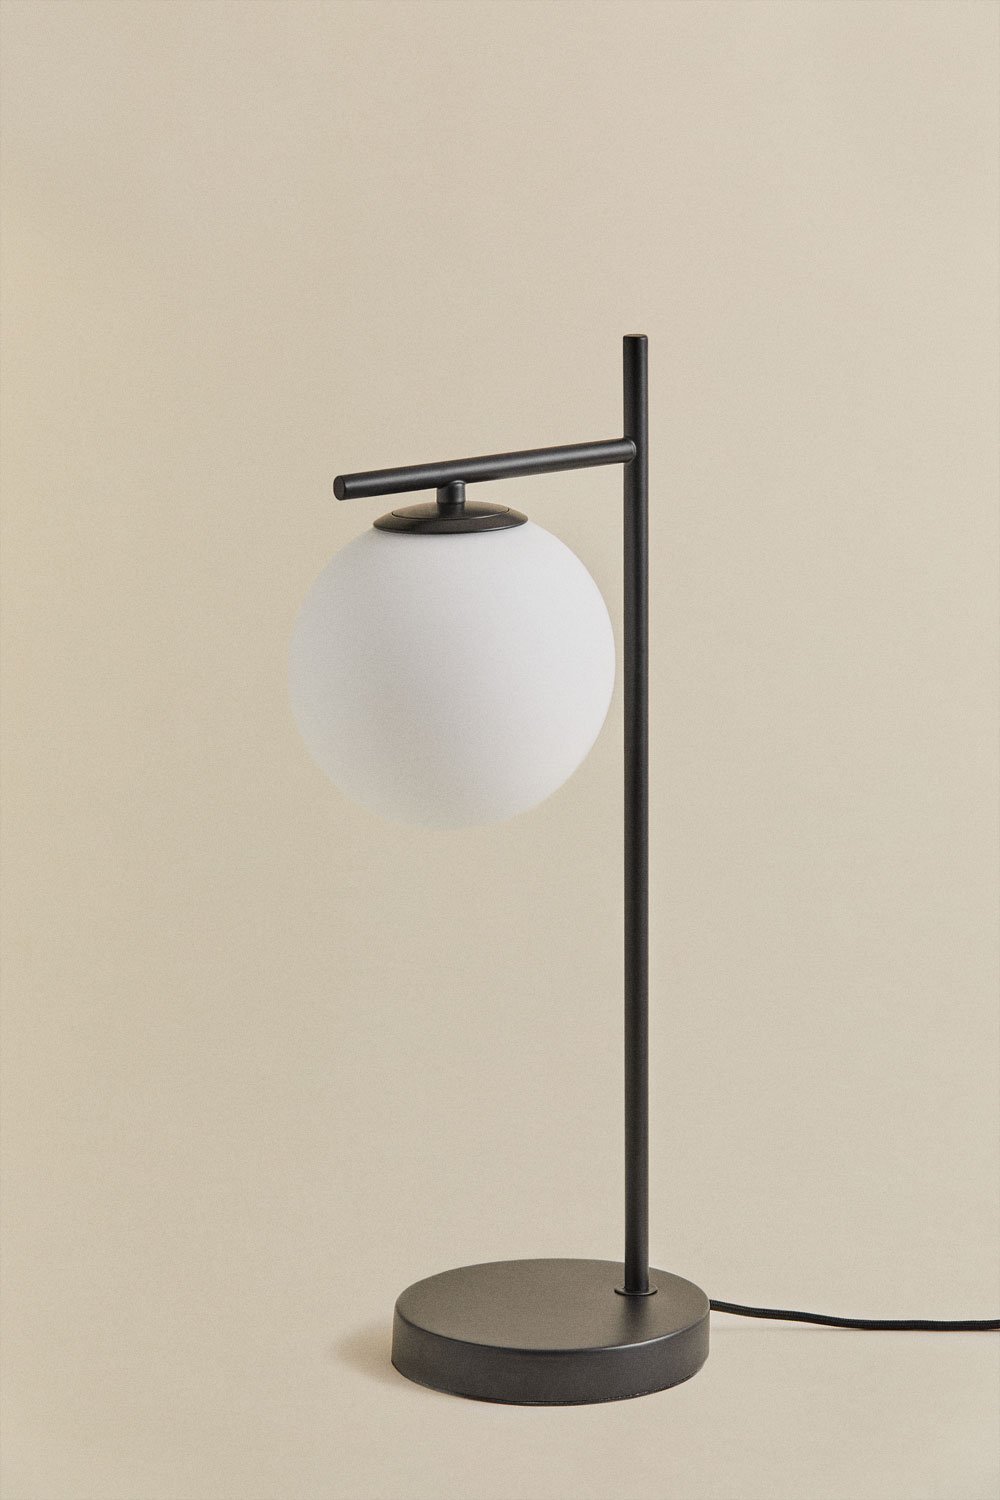 Tafellamp van metaal en glas Alligier Design, galerij beeld 1